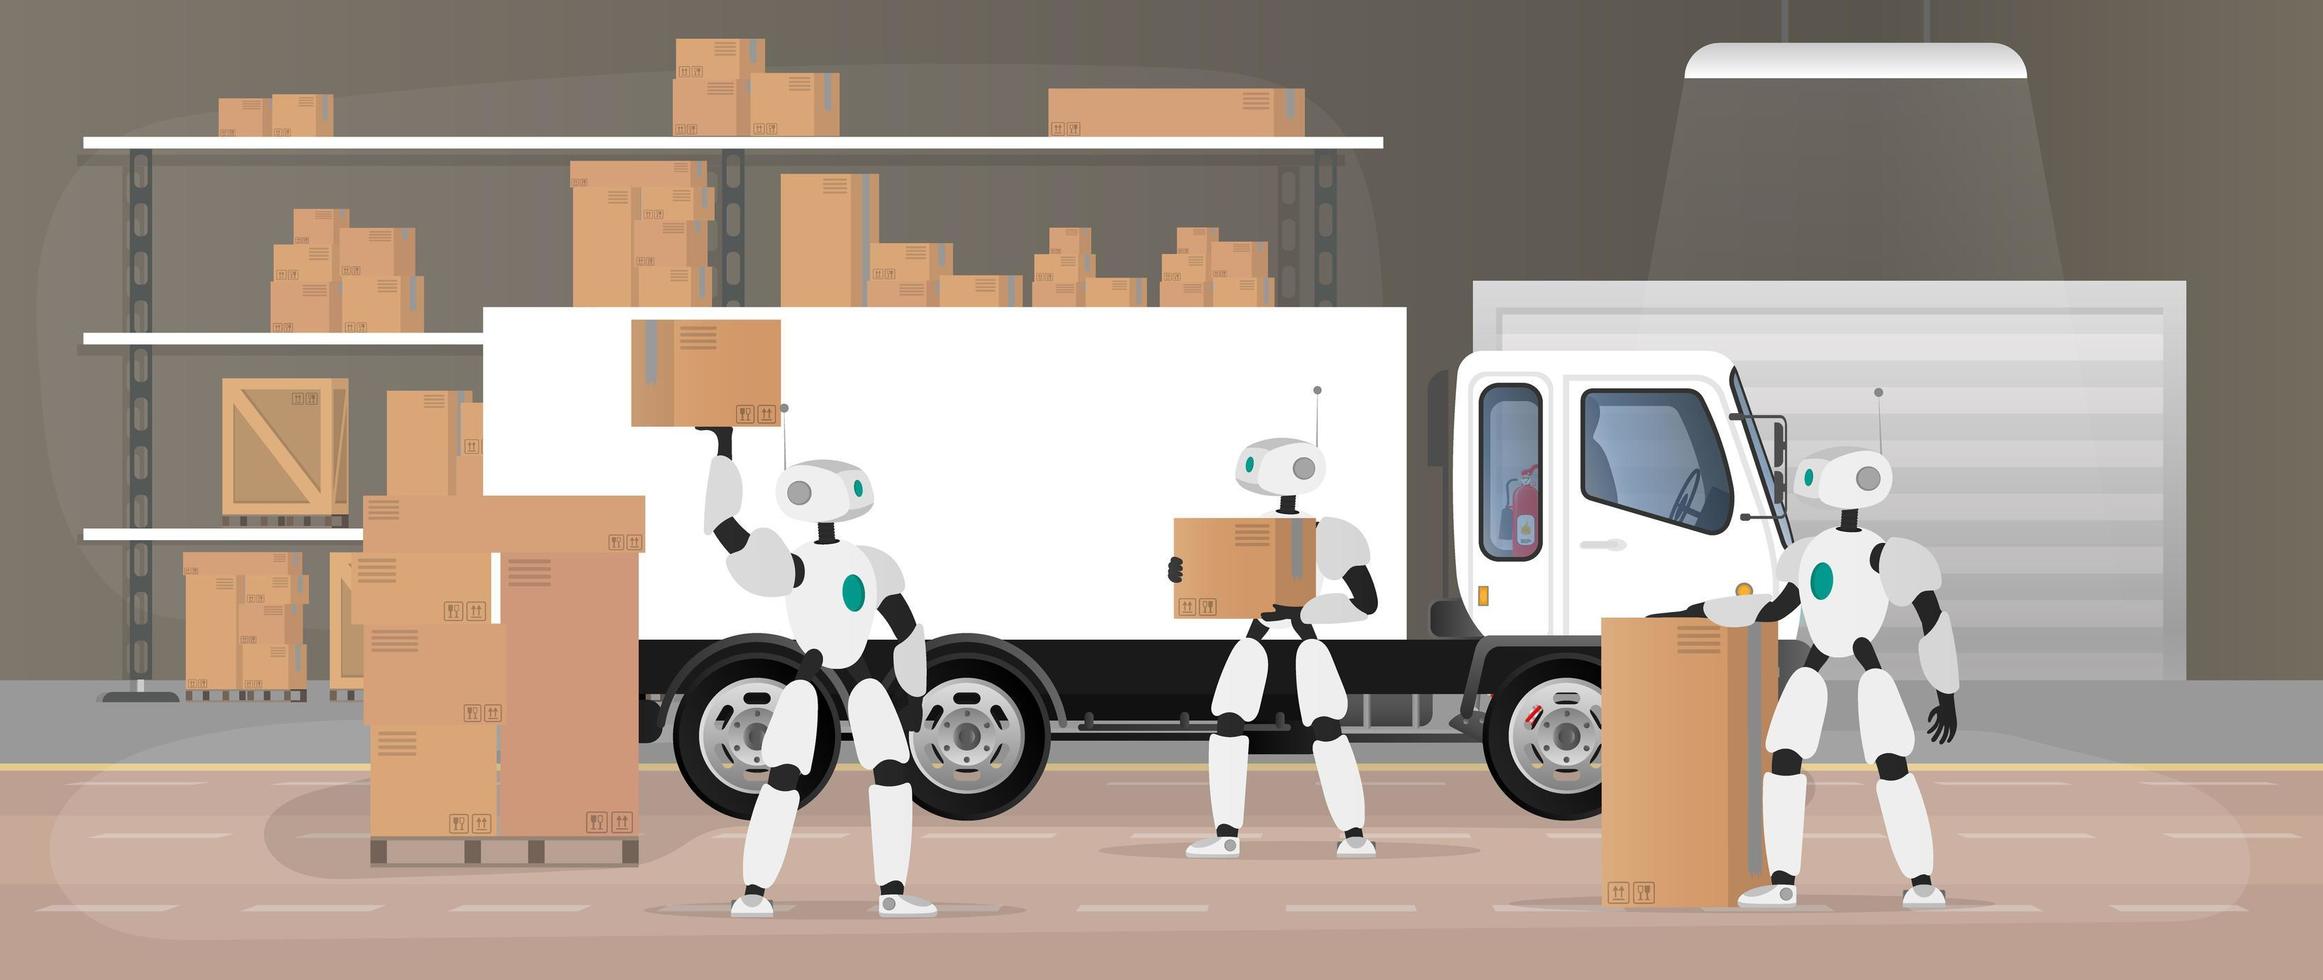 Roboter arbeiten in einem Fertigungslager. Roboter tragen Kisten und heben die Last. futuristisches Konzept der Lieferung, des Transports und der Verladung von Waren. großes Lager mit Kisten und Paletten. Vektor. vektor